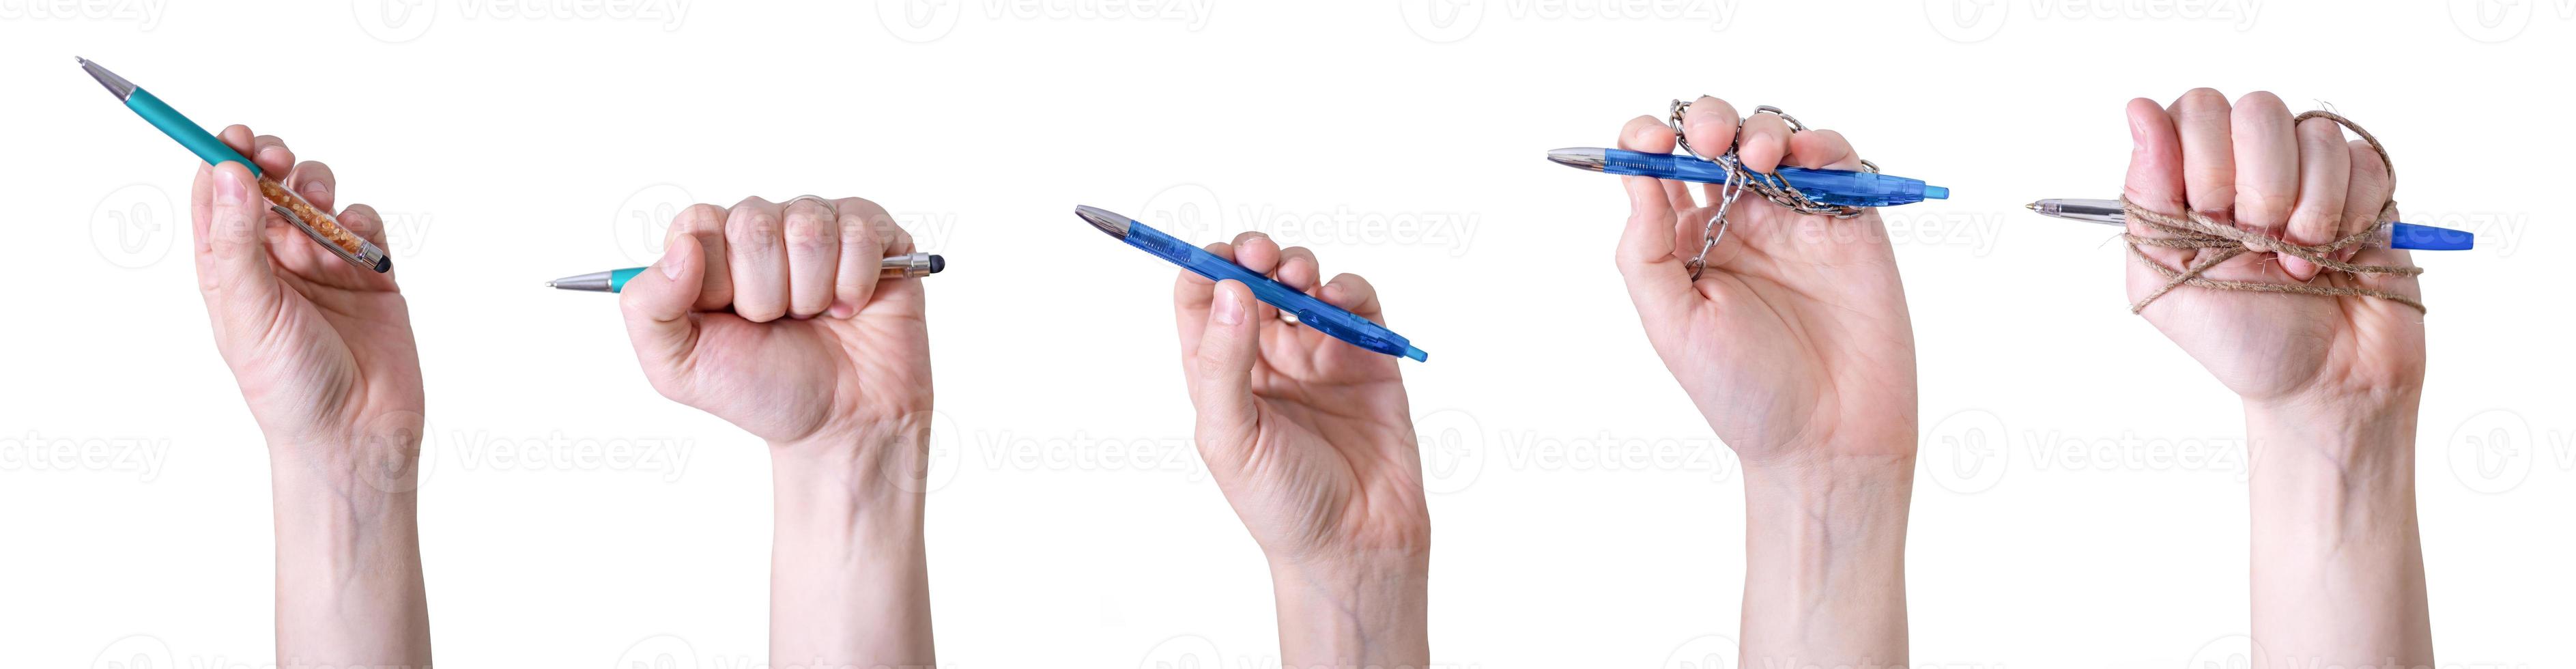 een collage van handen met pennen tegen een witte achtergrond. foto